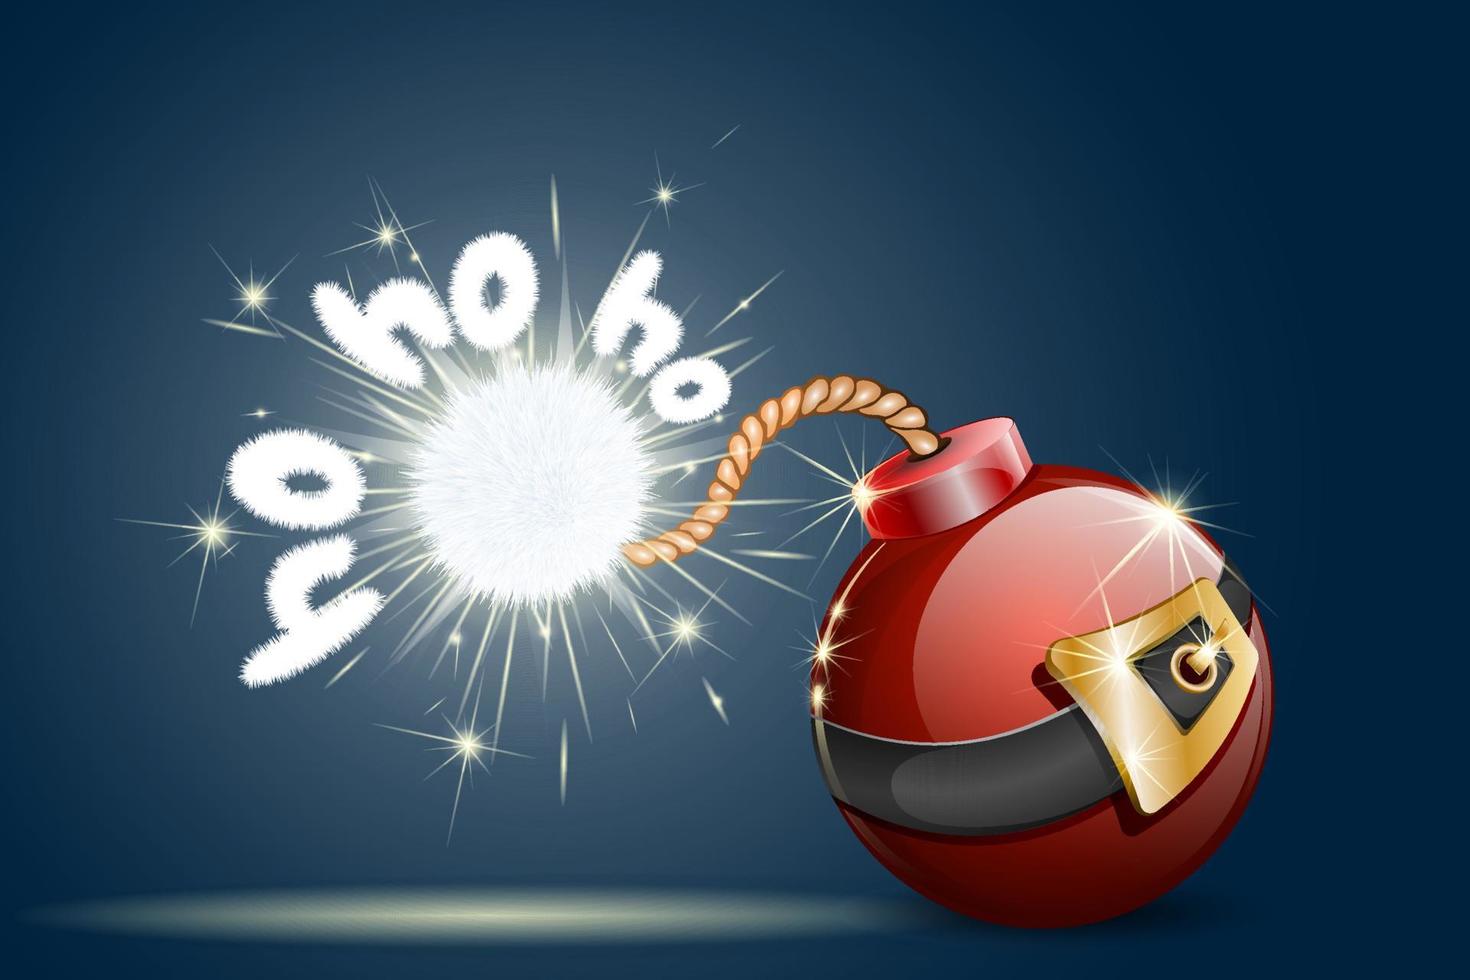 weihnachtsdekoration rote bombe stilisiert wie der weihnachtsmann mit pompon am ende des dochtes mit text ho ho ho. Weihnachtsverkaufskonzept. vektor